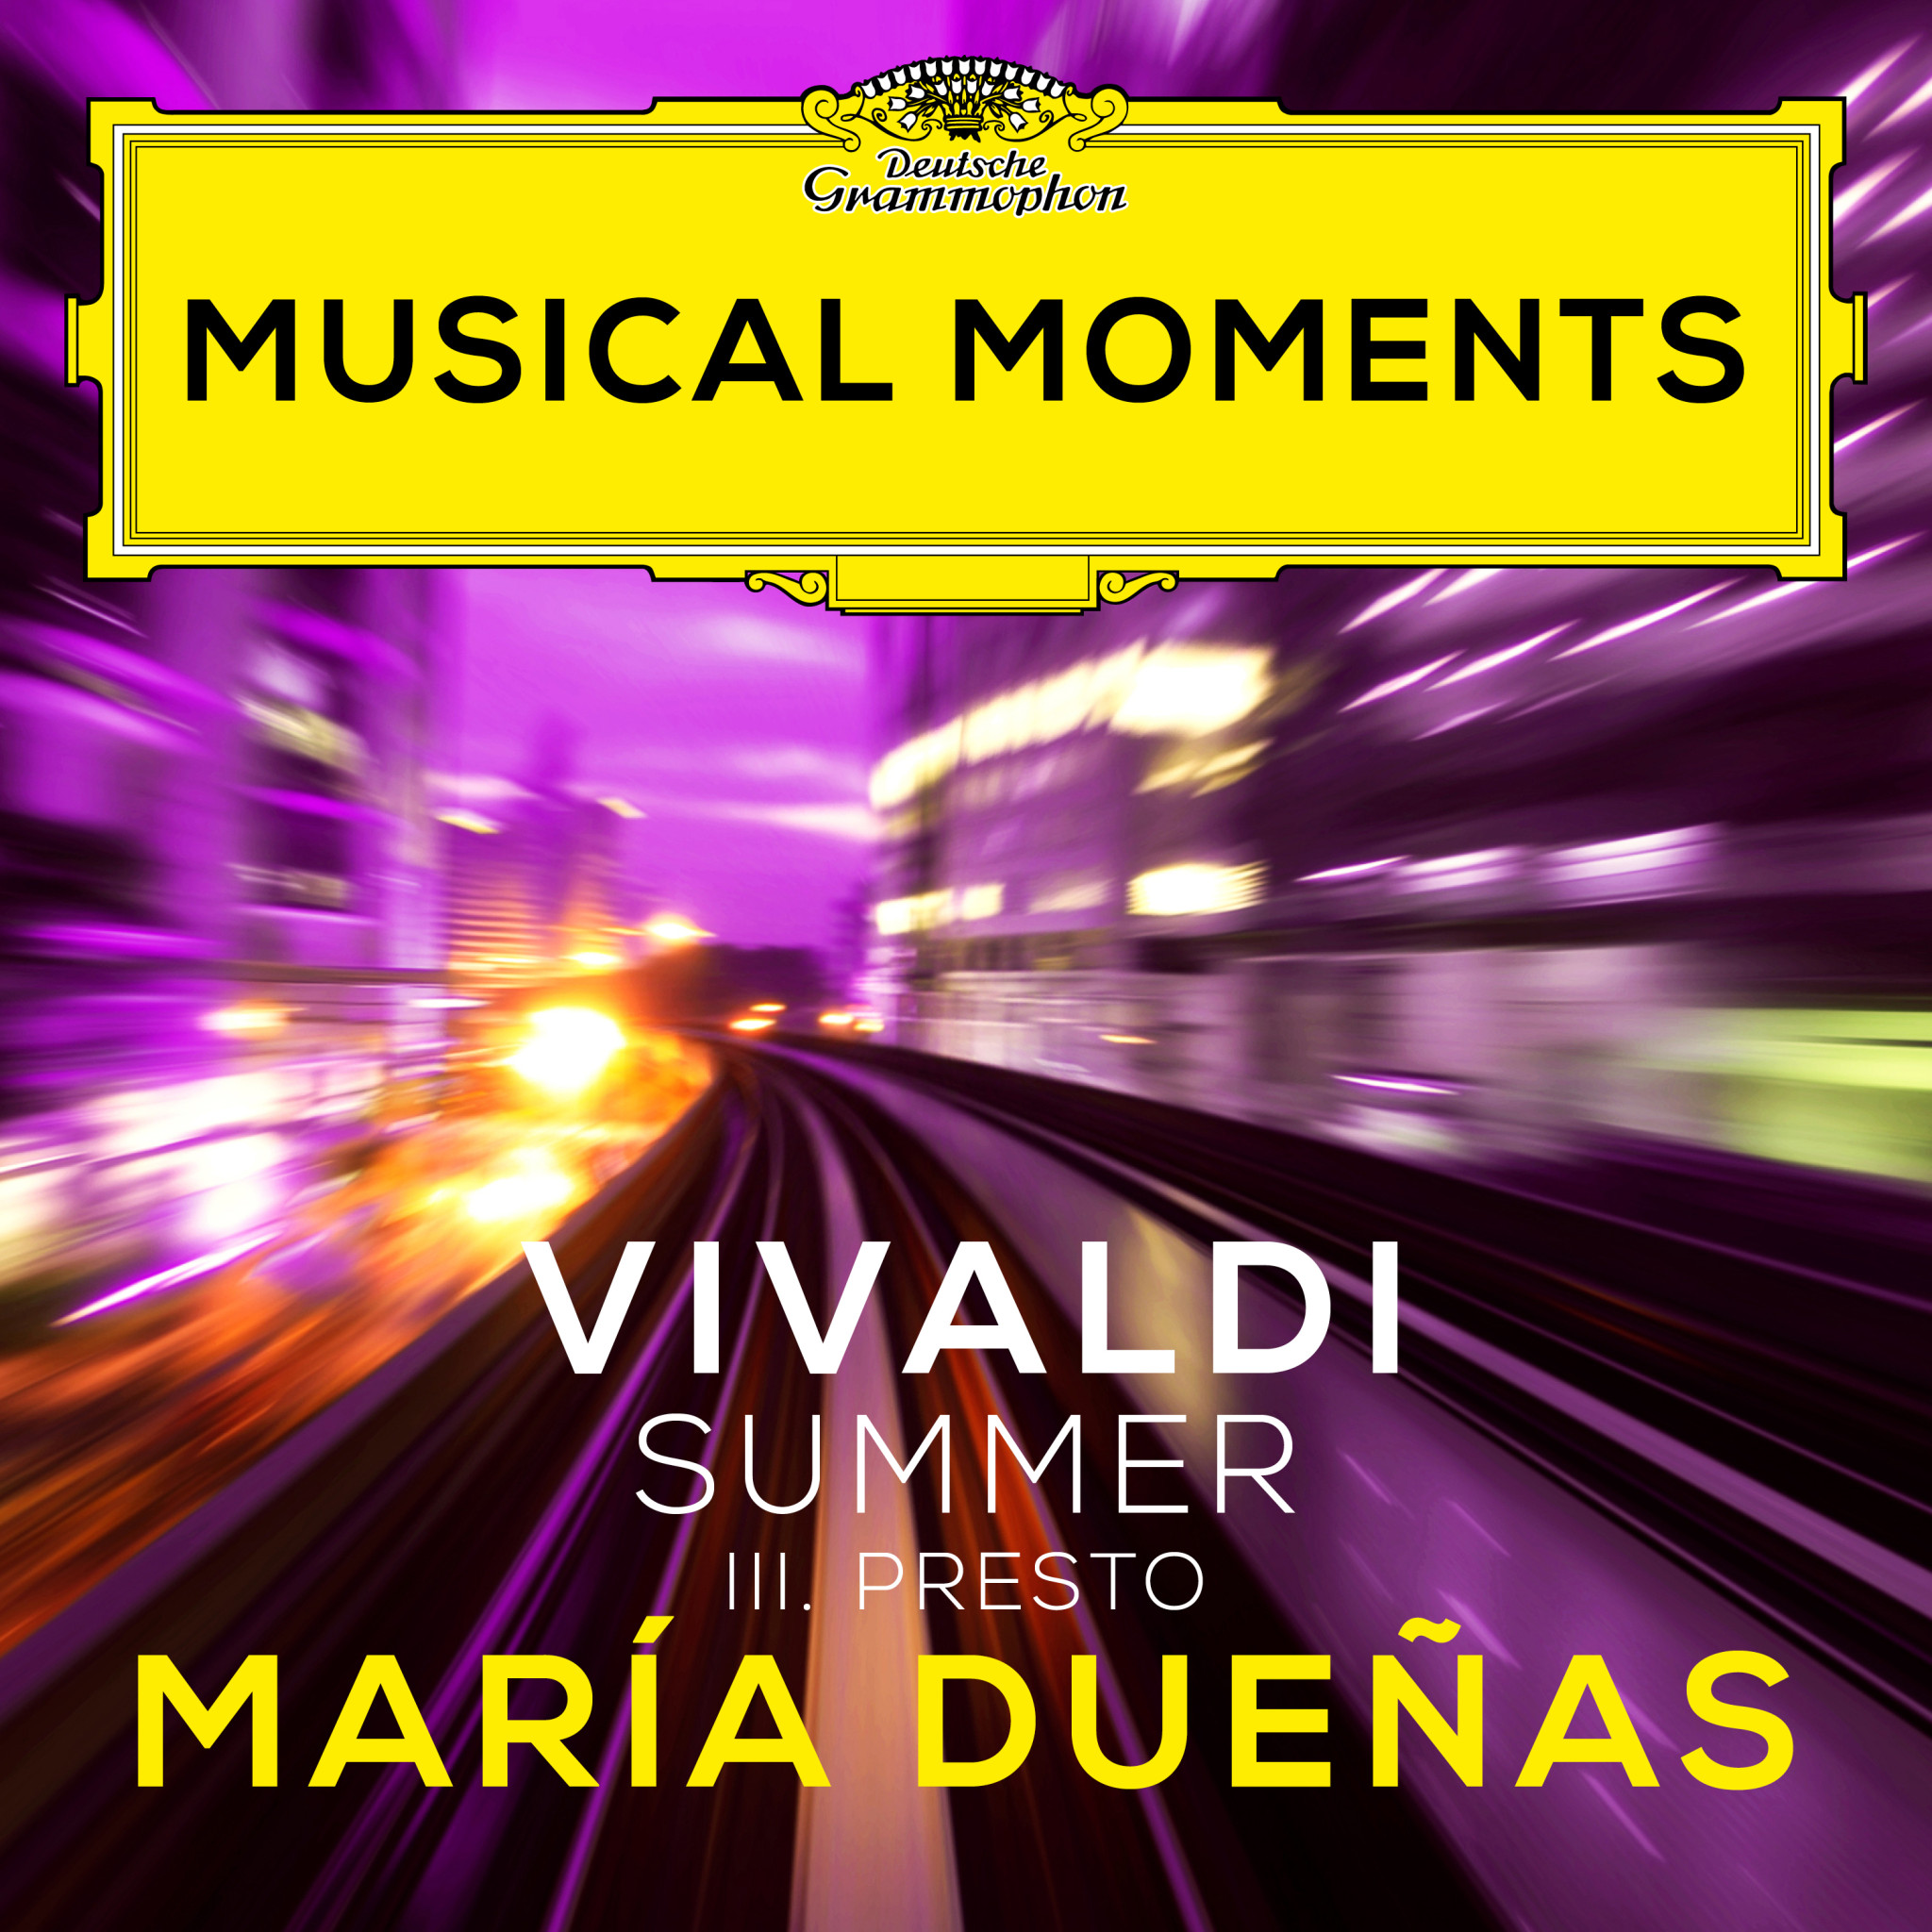 María Dueñas - Vivaldi: The Four Seasons / Violin Concerto in G Minor, RV 315 "Summer": III. Presto